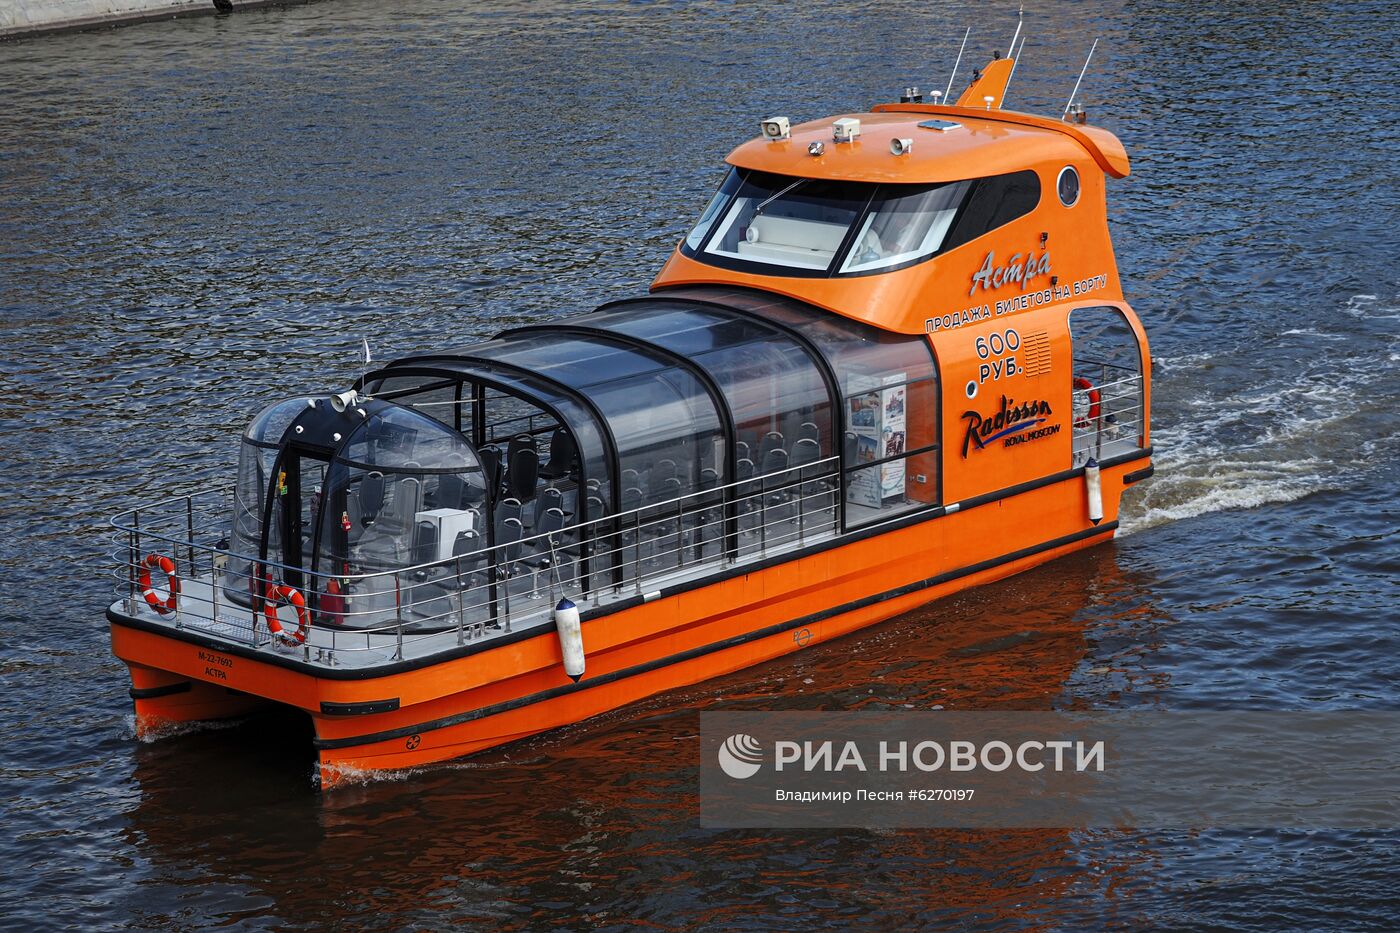 Парад теплоходов в честь открытия пассажирской навигации по Москве-реке 